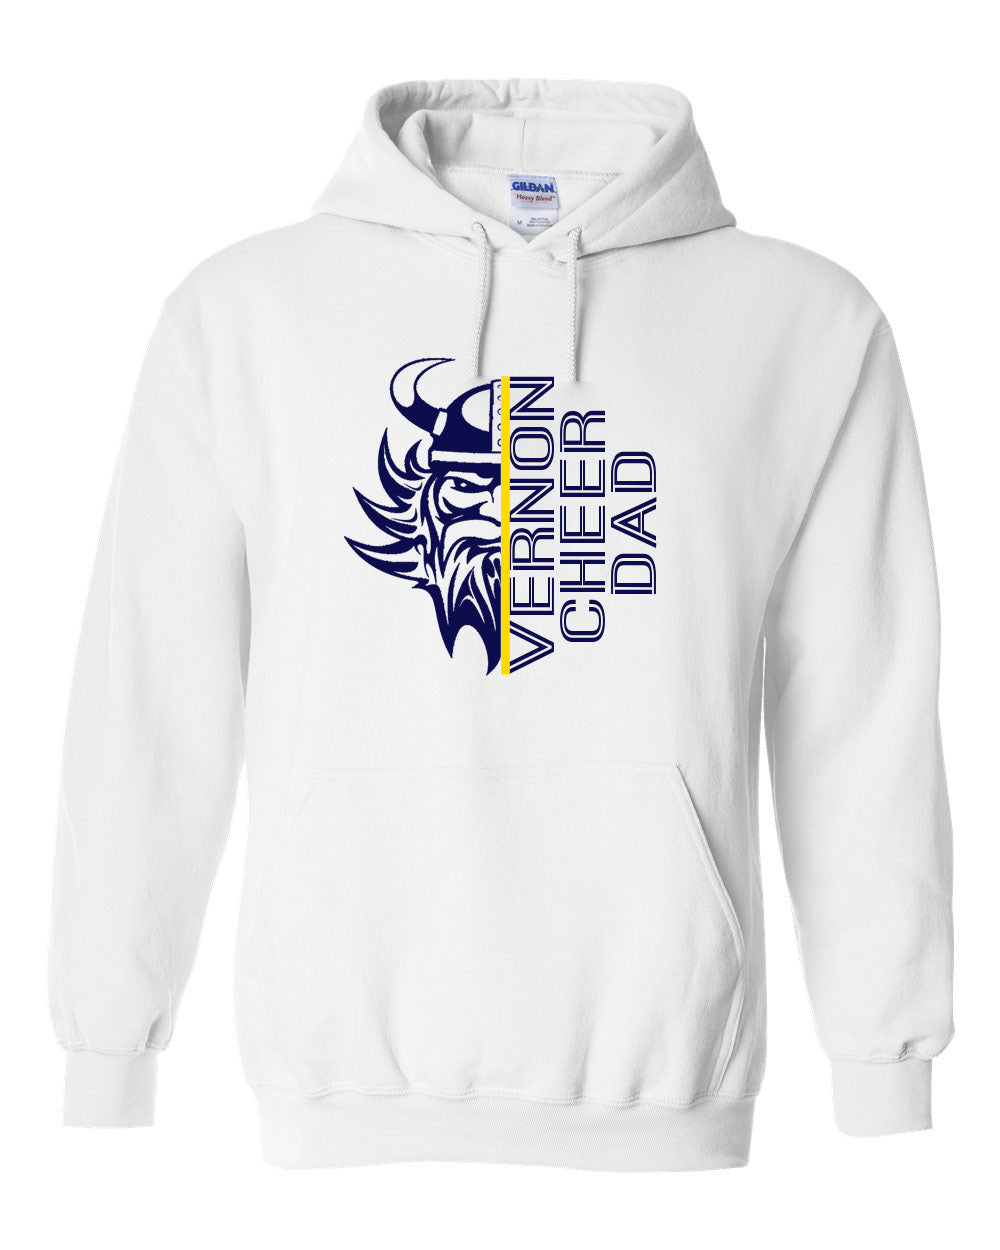 Vikings Cheer design 10 Hooded Sweatshirt